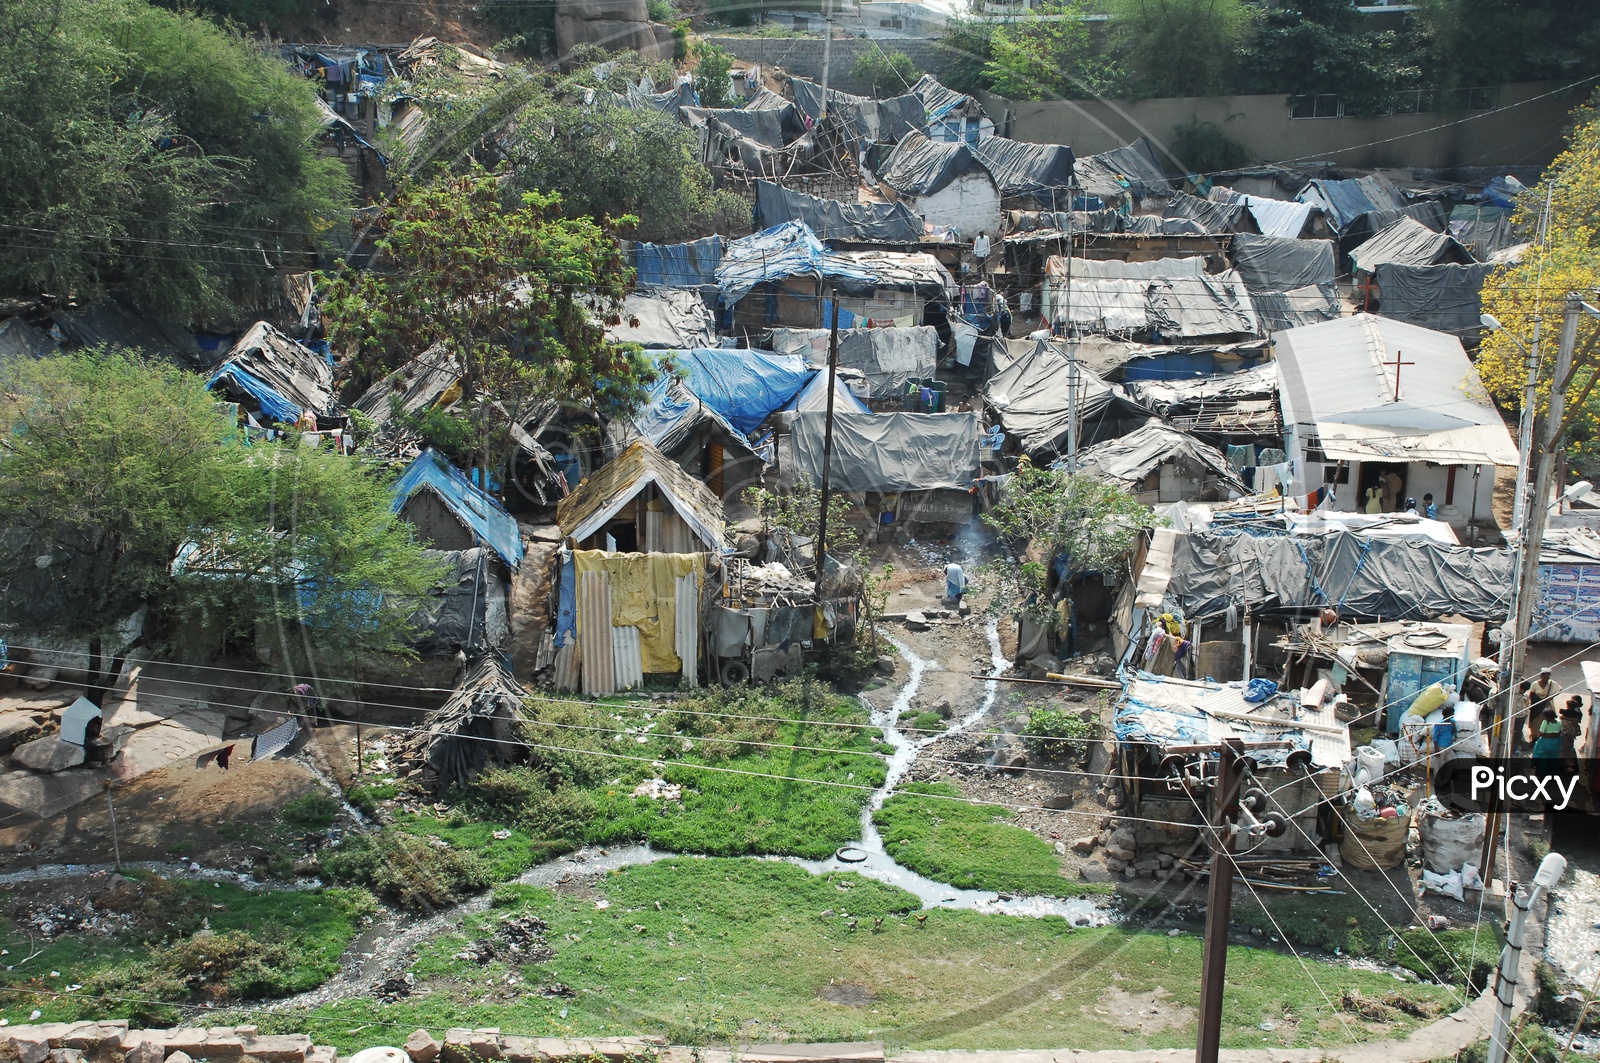 Huts in a Slum Area or Slum Area Huts